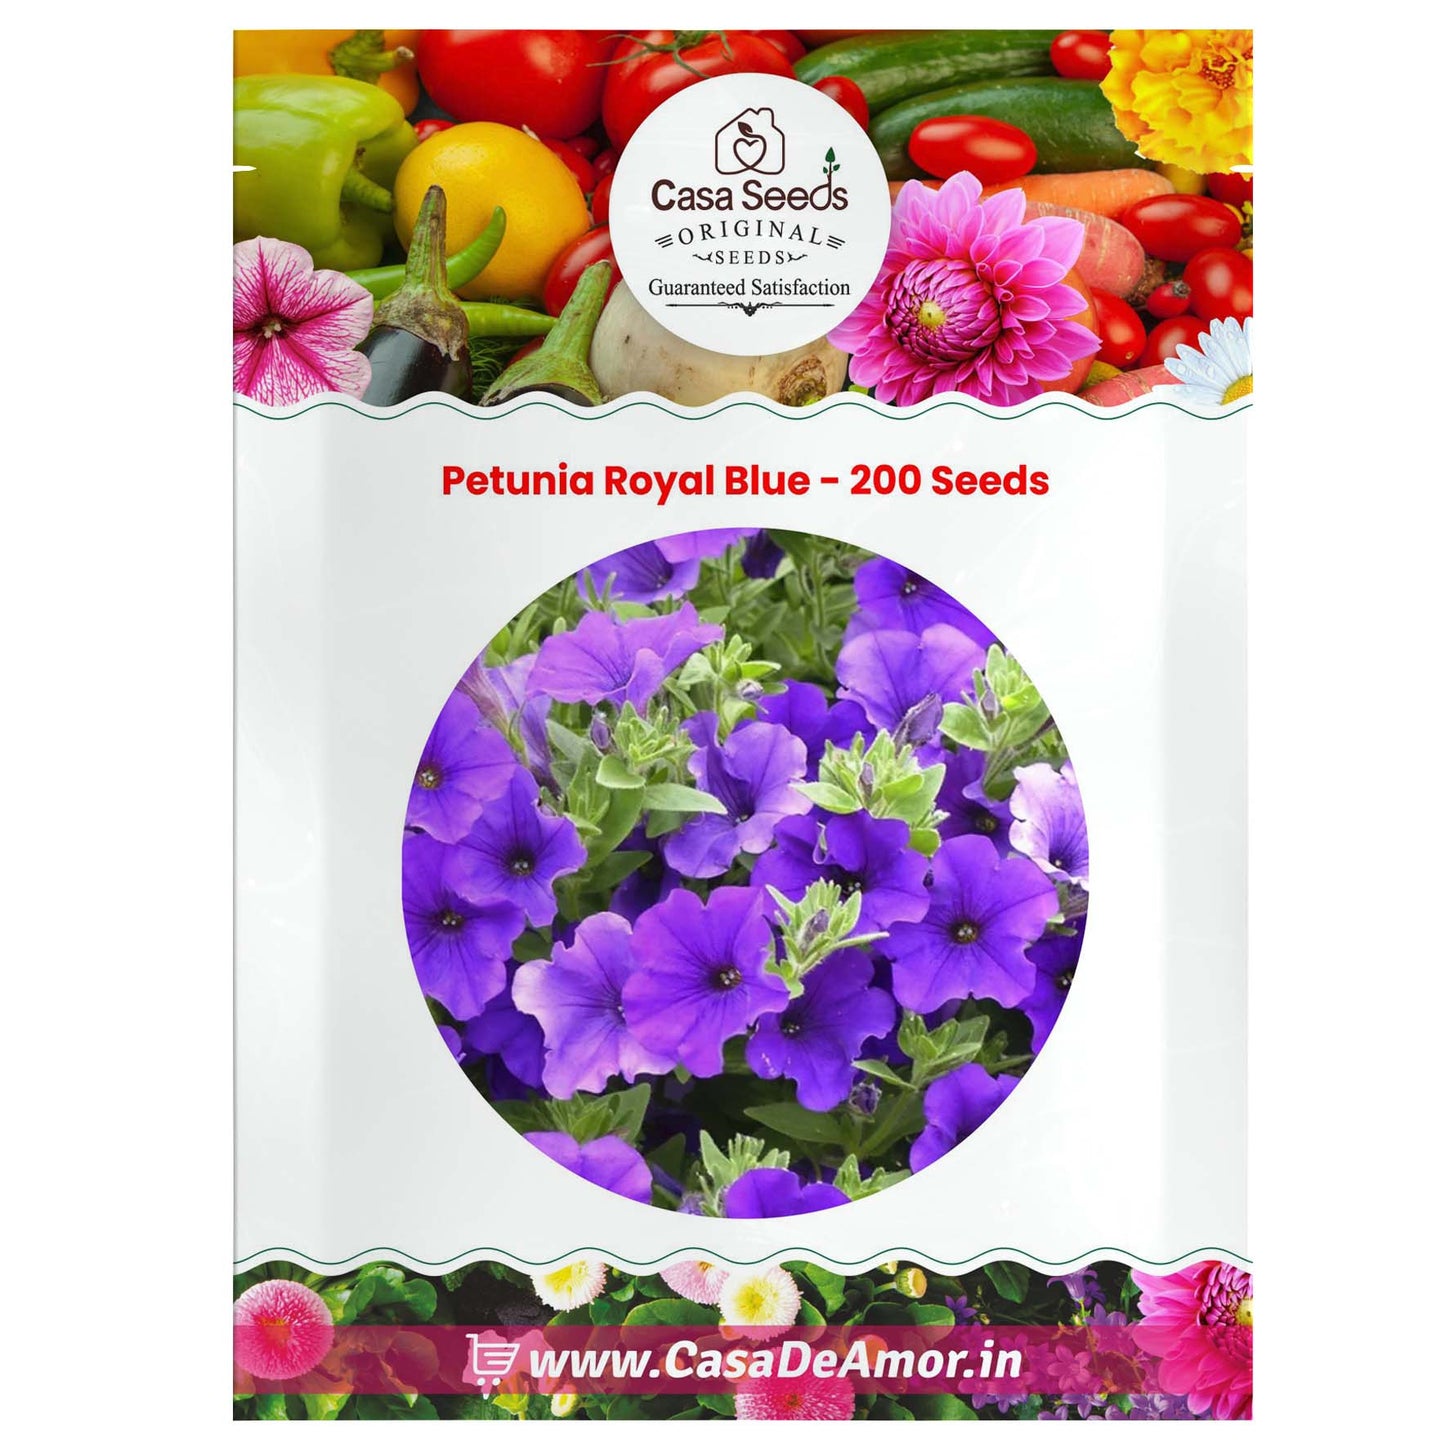 Petunia Royal Blue - 200 Seeds